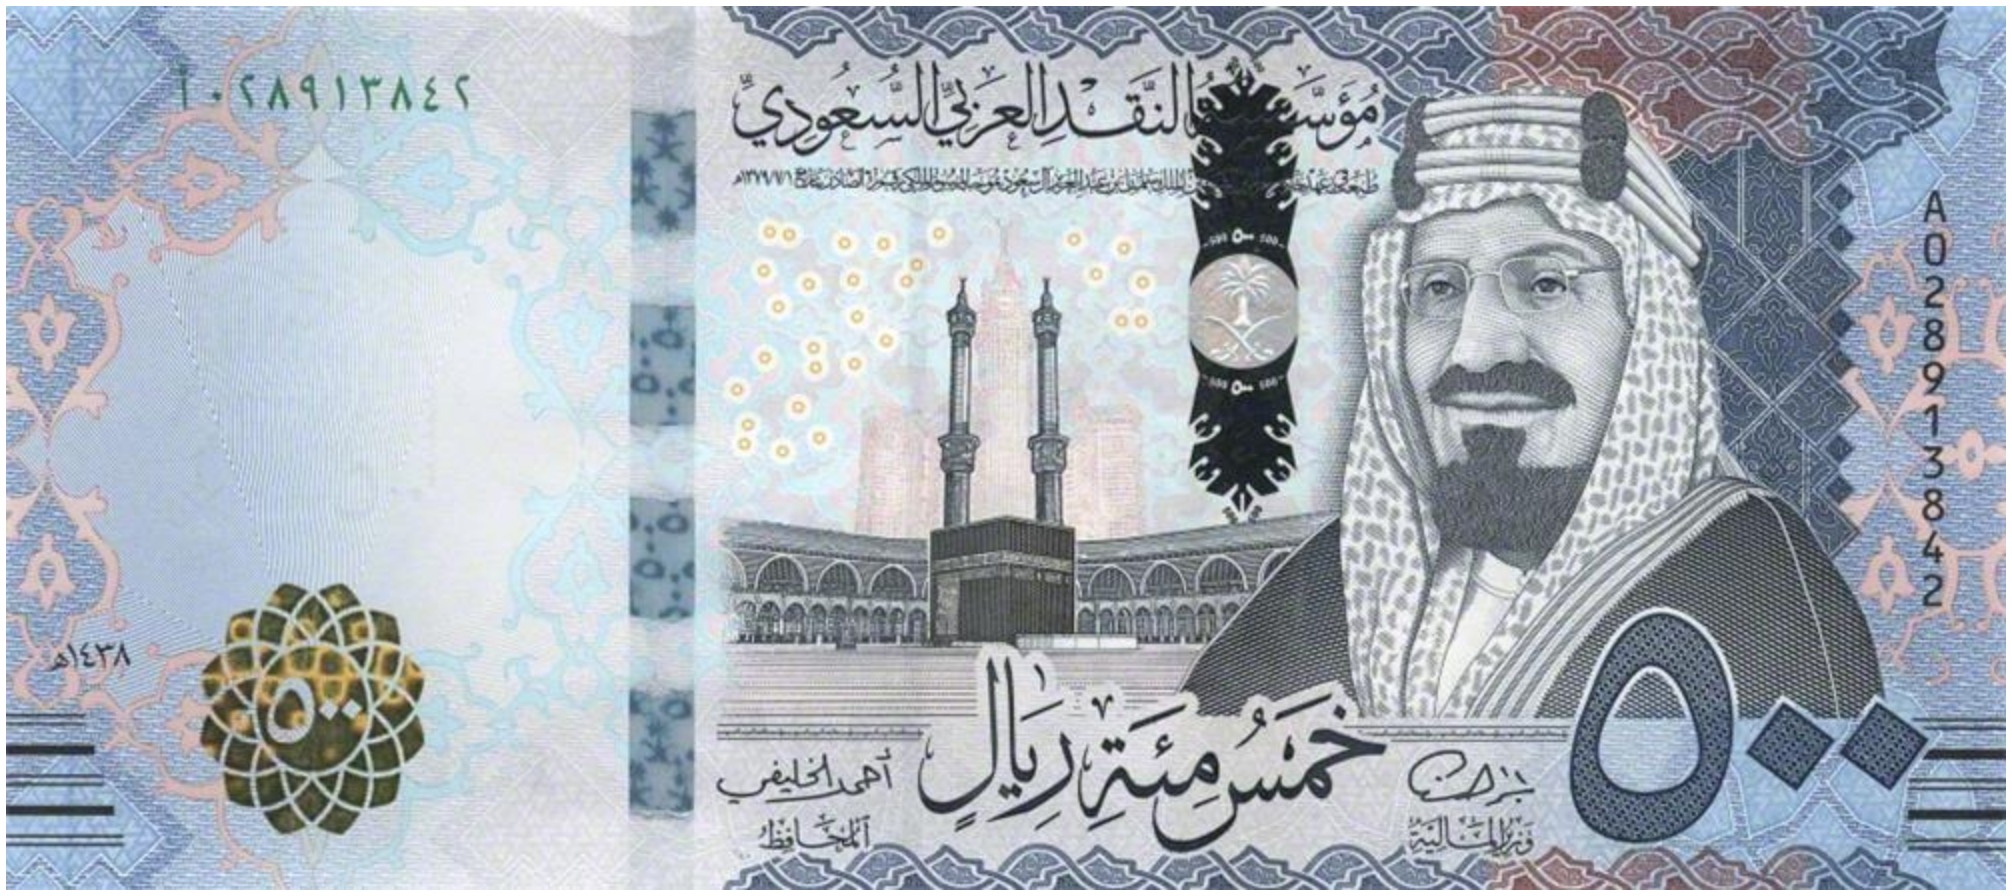 500 Saudi Riyals banknote (2016 series)